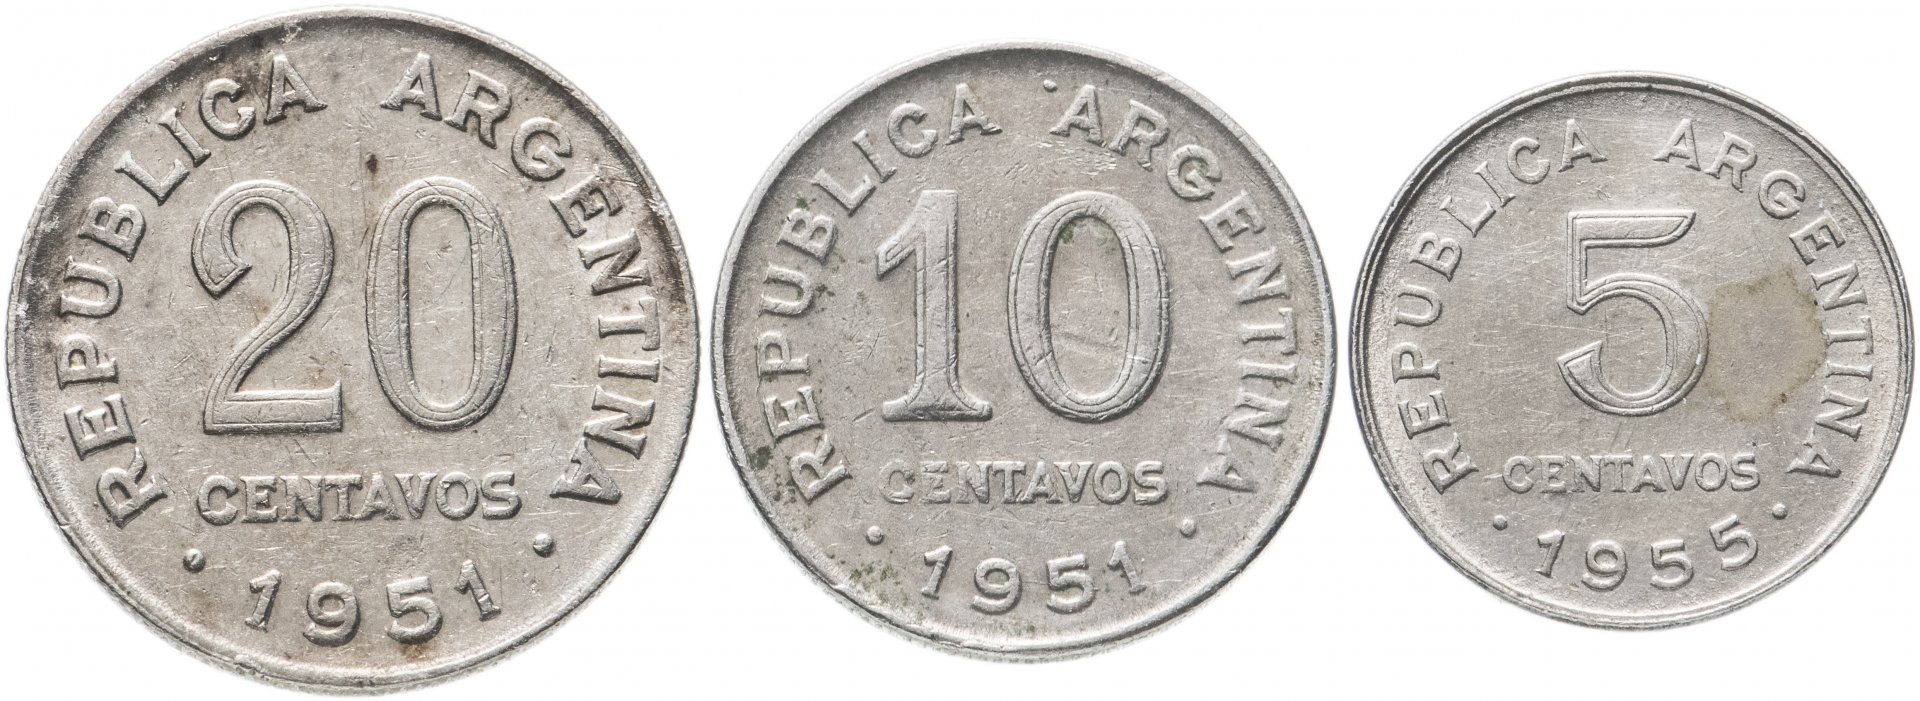 1951 1955. Монета 1951. Светские монеты 1951. Аргентина 10 песо 1951-1955. 50, 25 И 10 сен 1951-1955 годов.